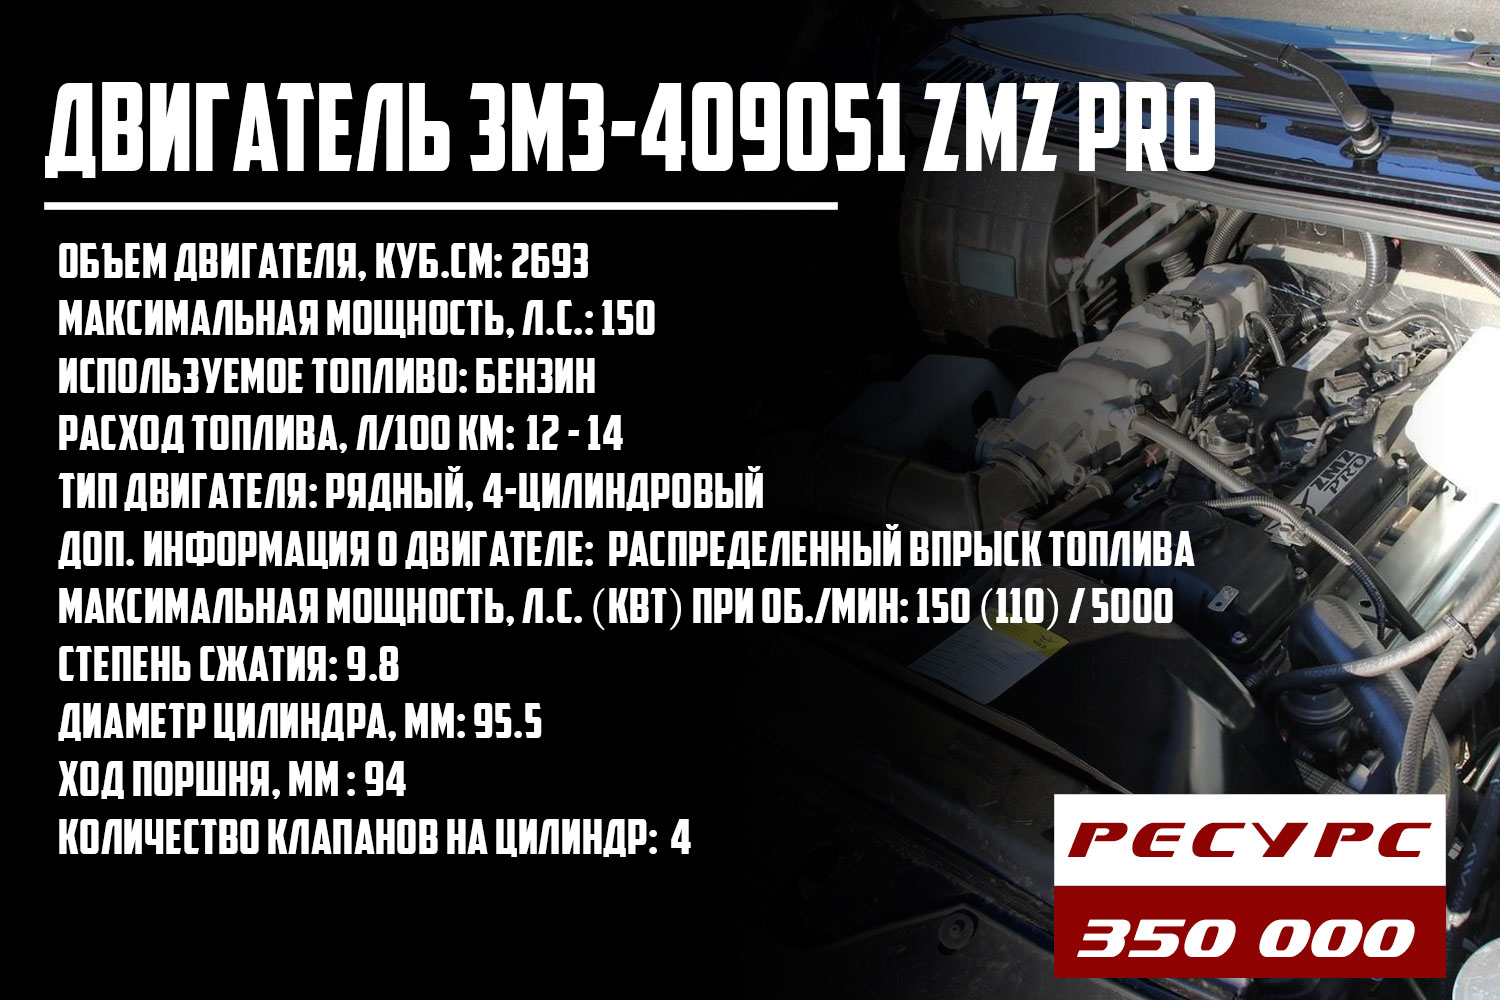 ЗМЗ-409051 ZMZ Pro